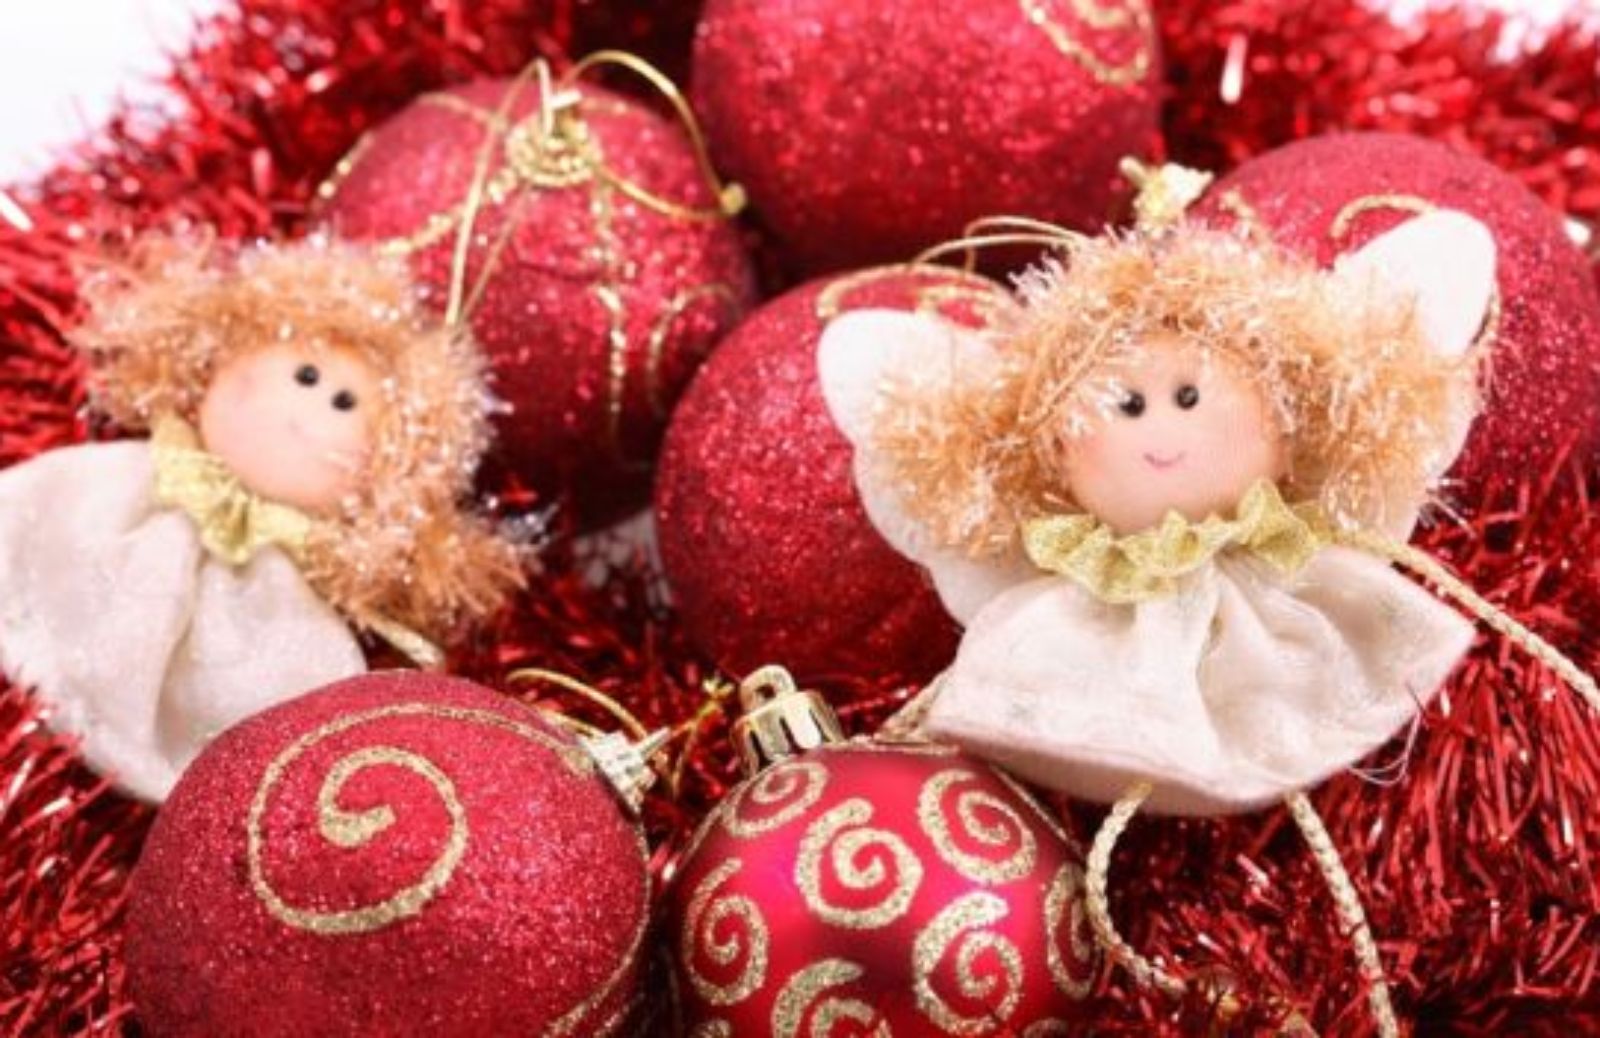 Natale in casa: fare le decorazioni per l'albero con i bambini